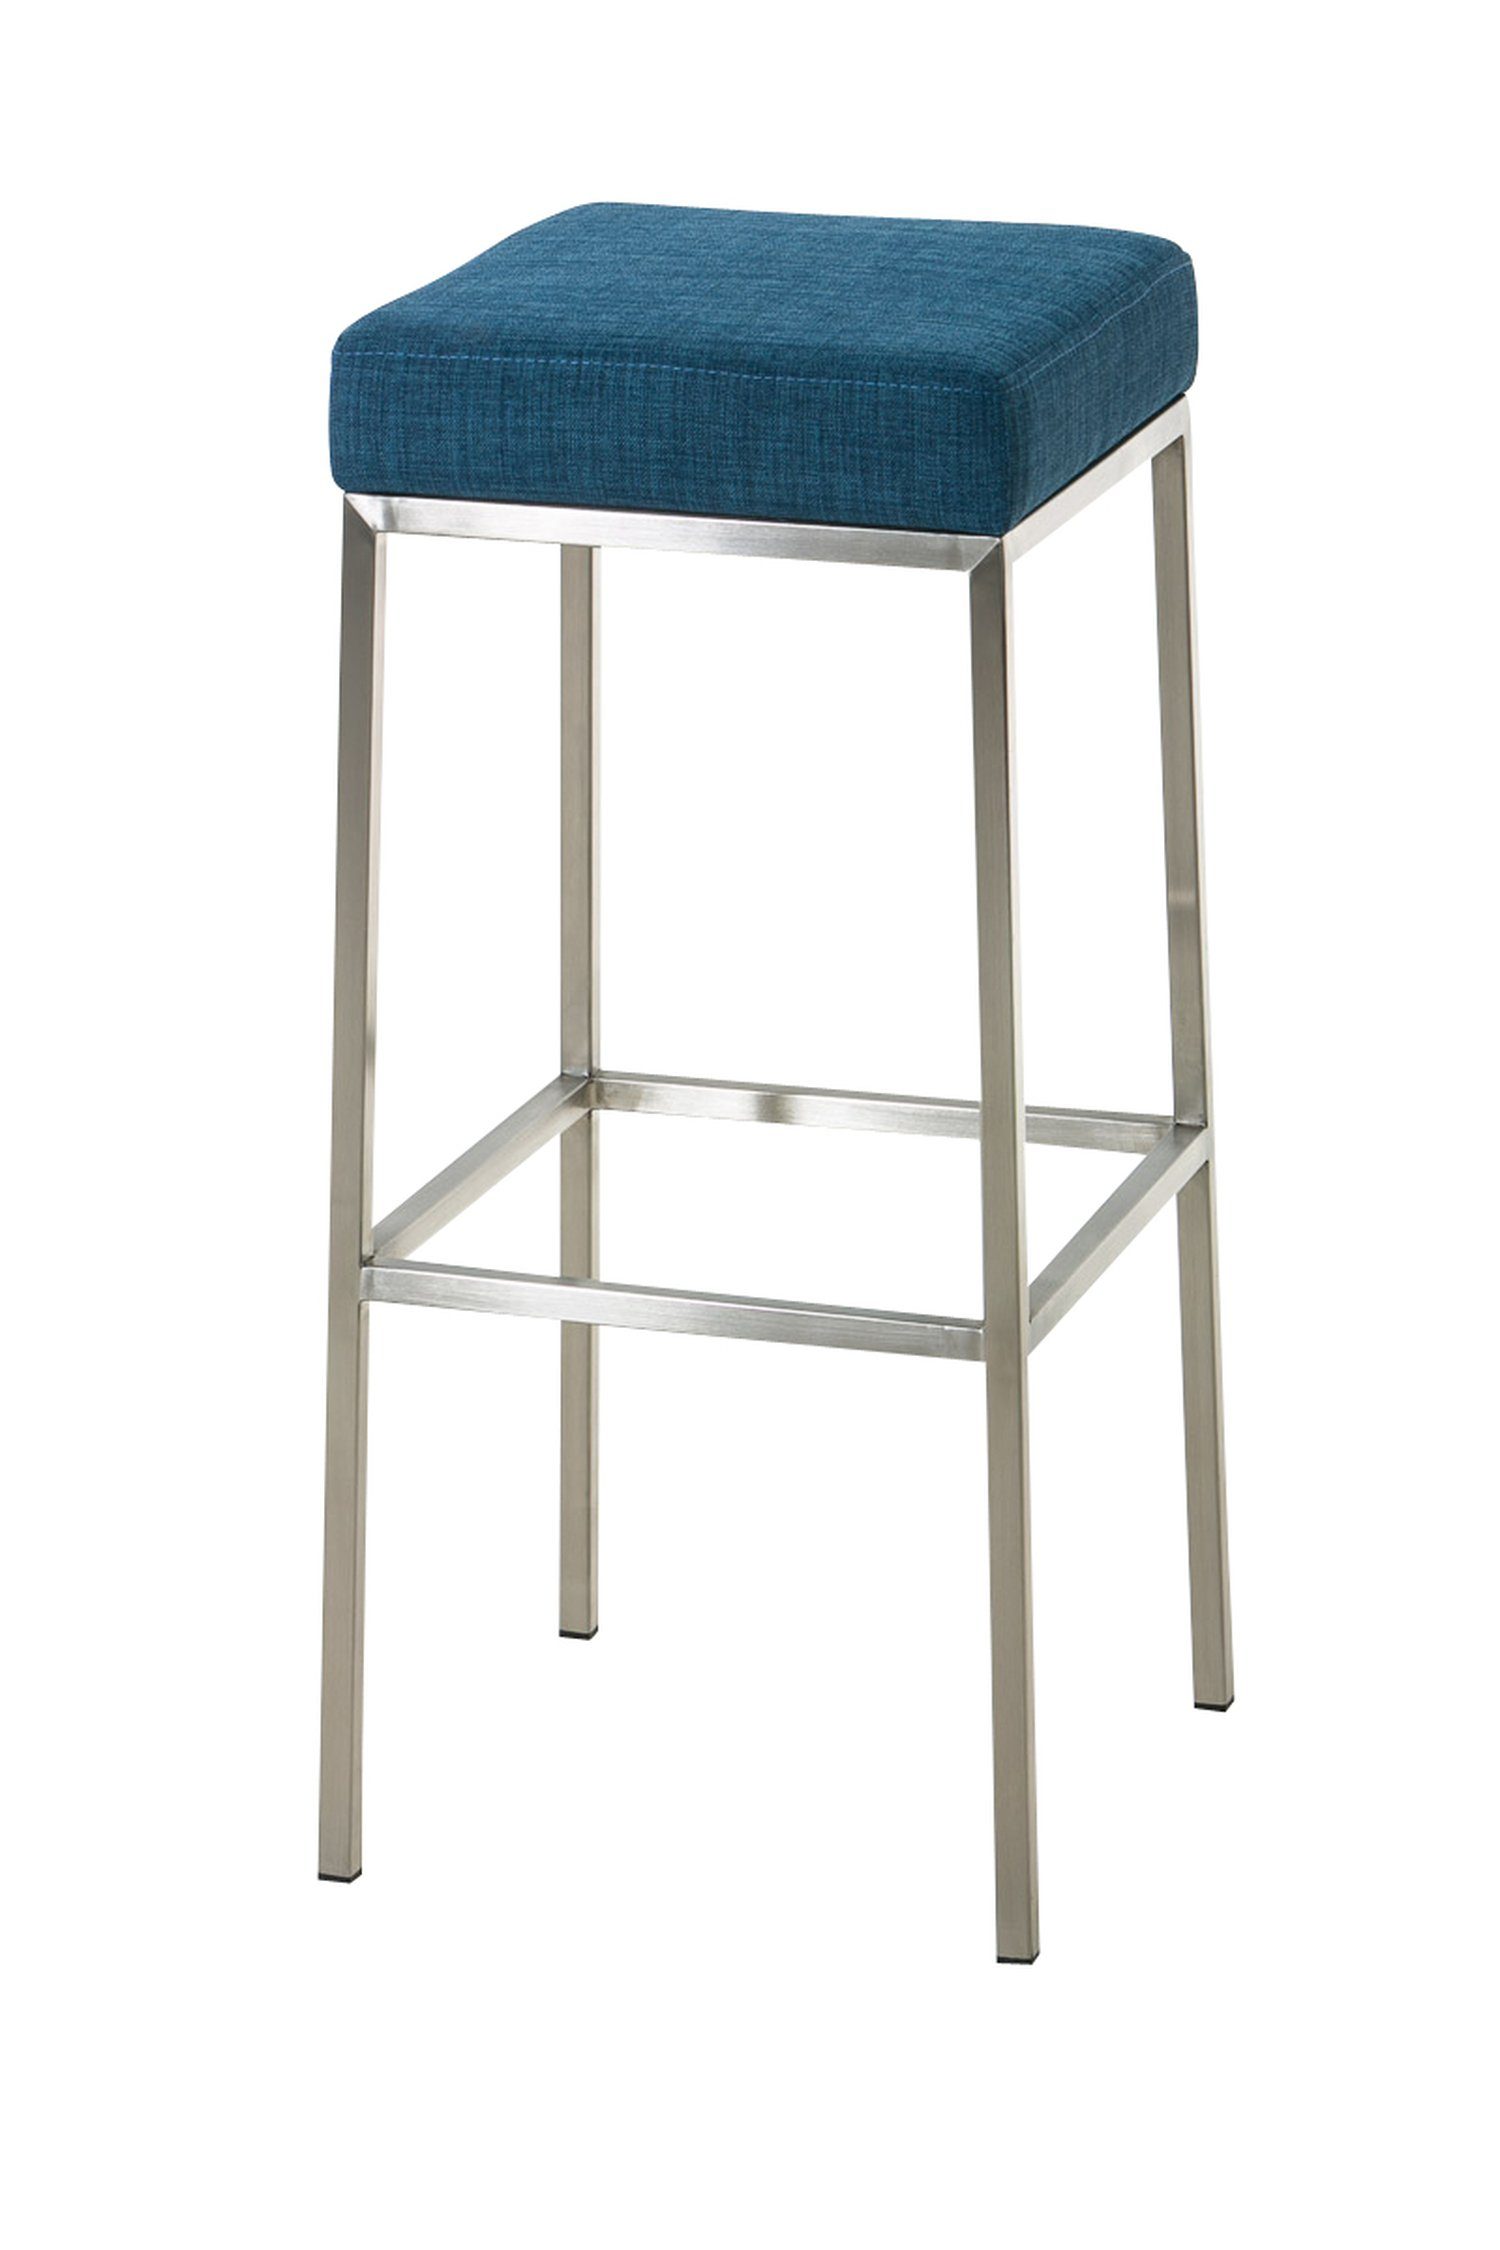 TPFLiving Barhocker Montana-E5 (mit Fußstütze und hochwertiger Polsterung - Hocker für Theke & Küche), Gestell Edelstahl - Thekenhocker - Sitzfläche: Stoff Blau